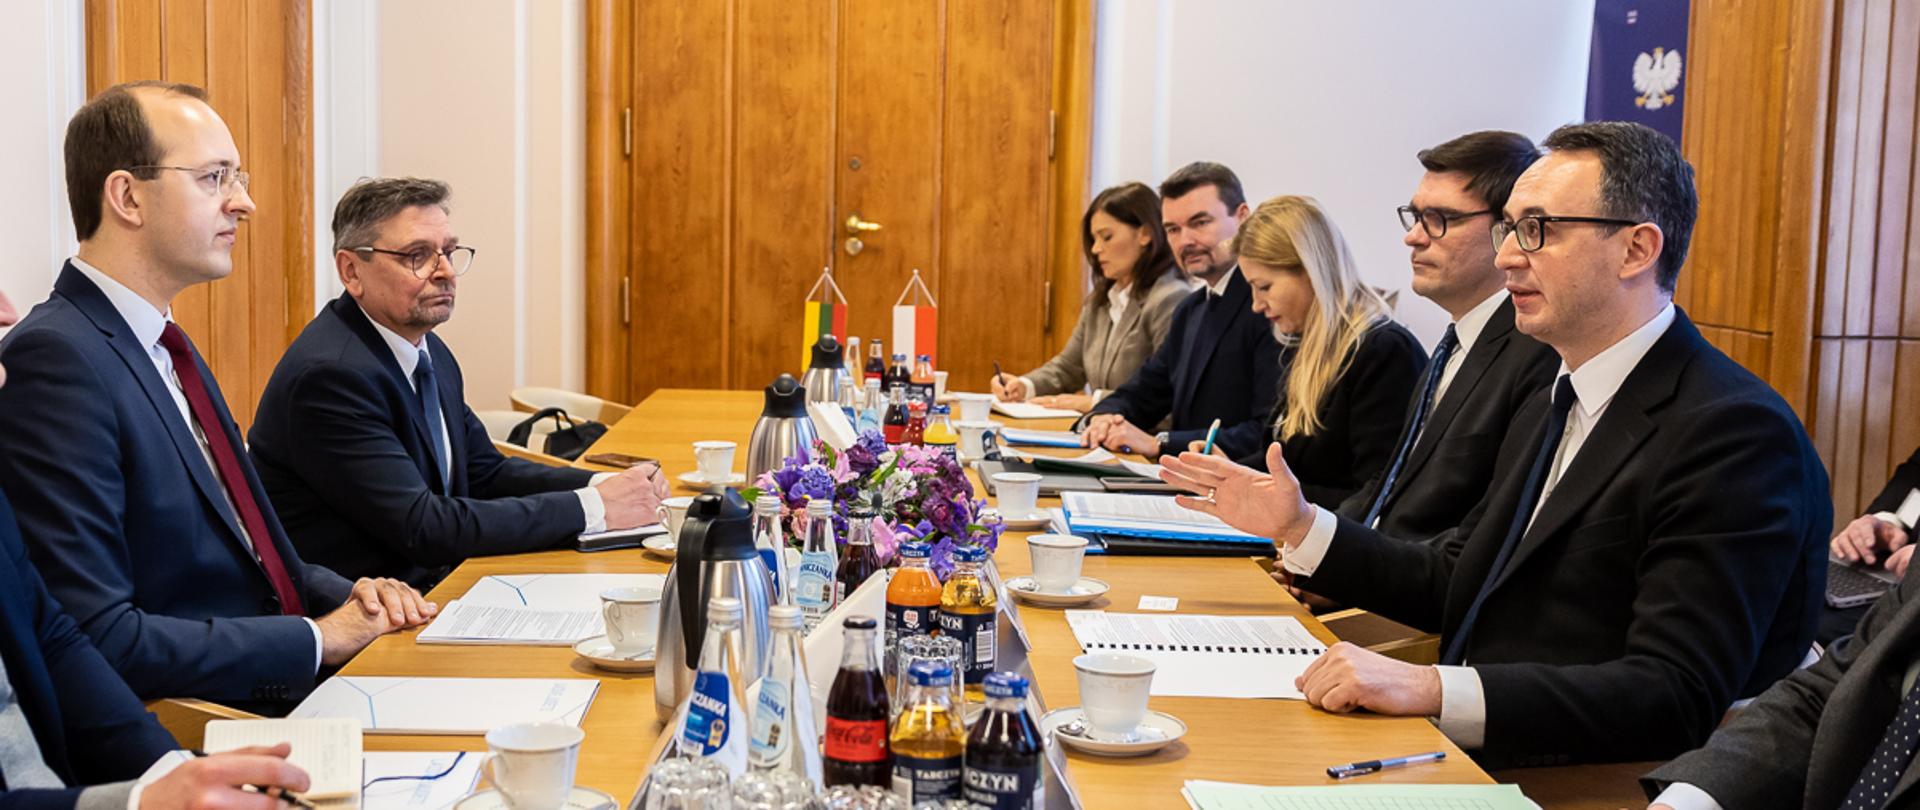 Spotkanie ministrów ds. transportu Polski i Litwy